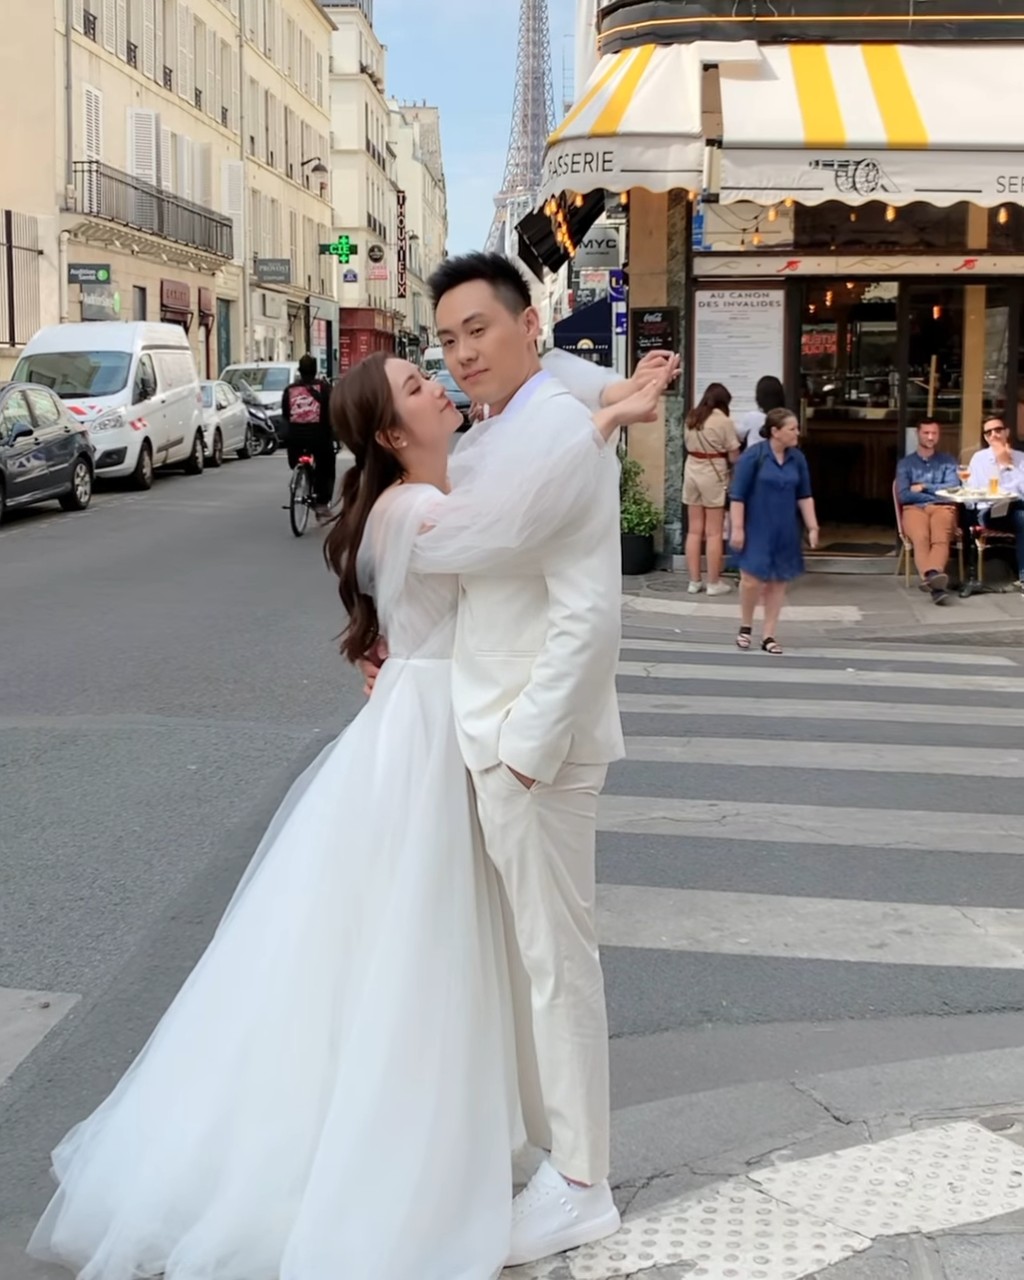 蔡嘉欣在法国街头影婚照。